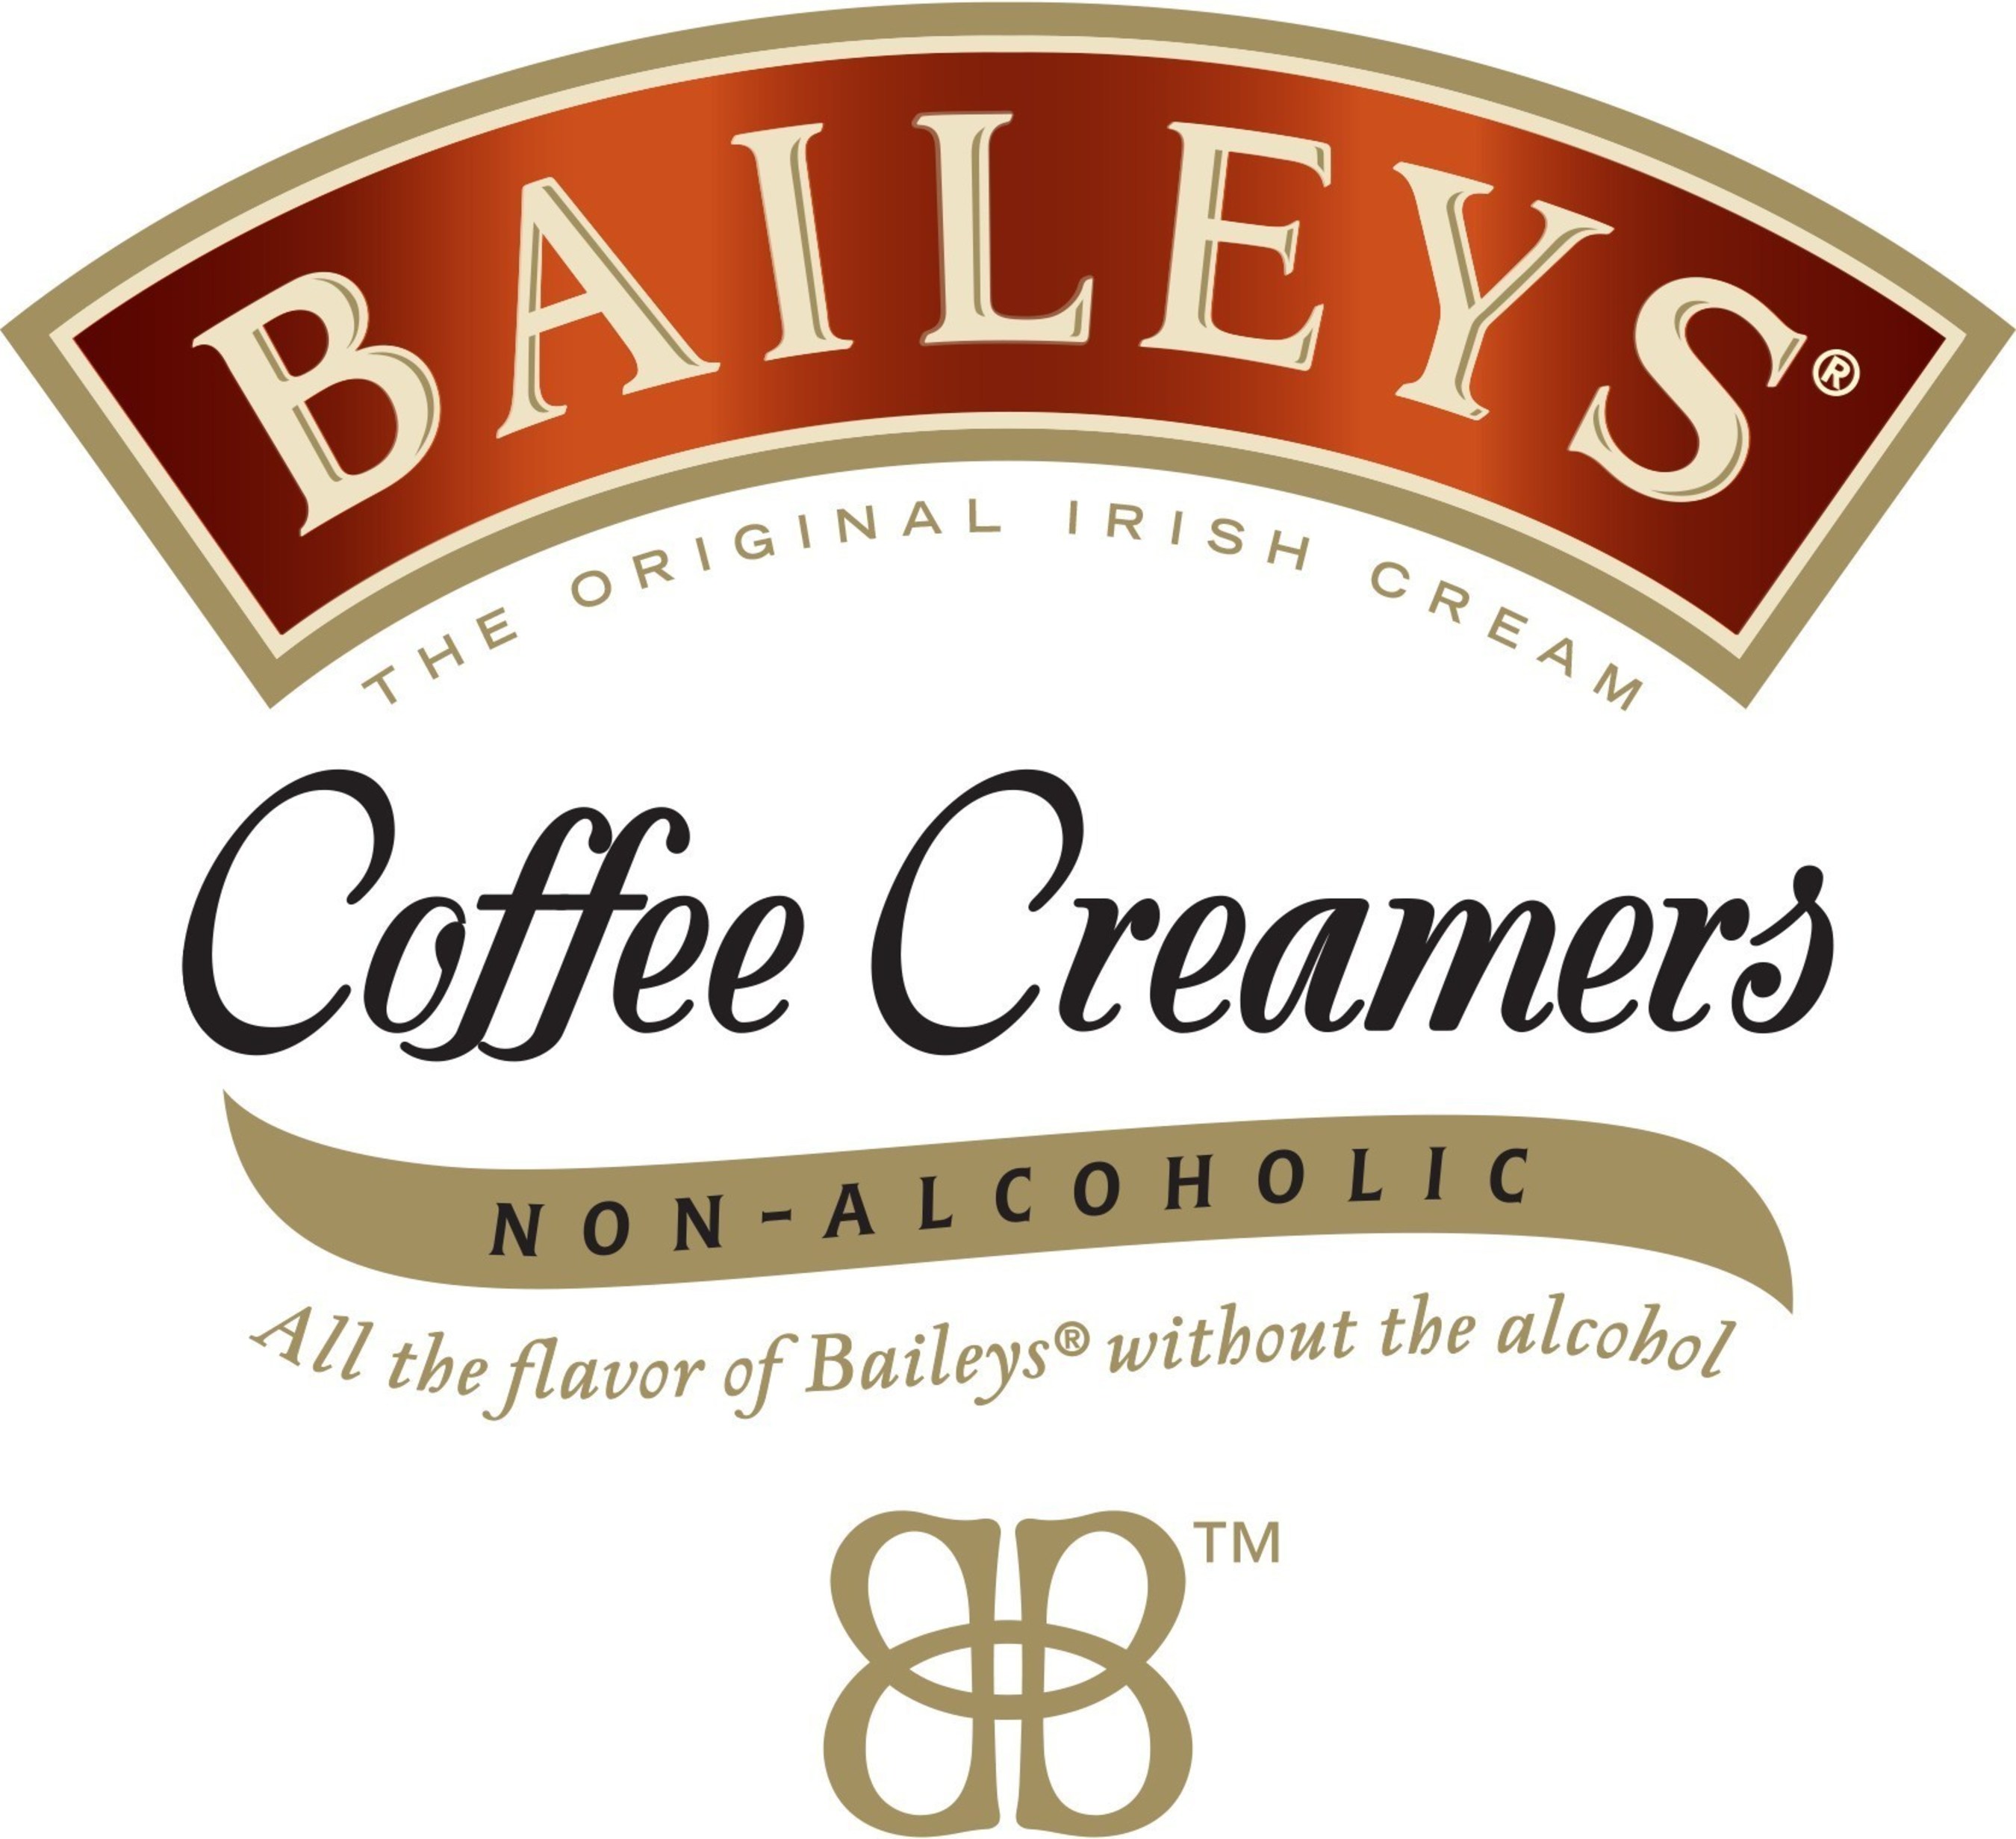 BAILEYS(R) Coffee Creamers